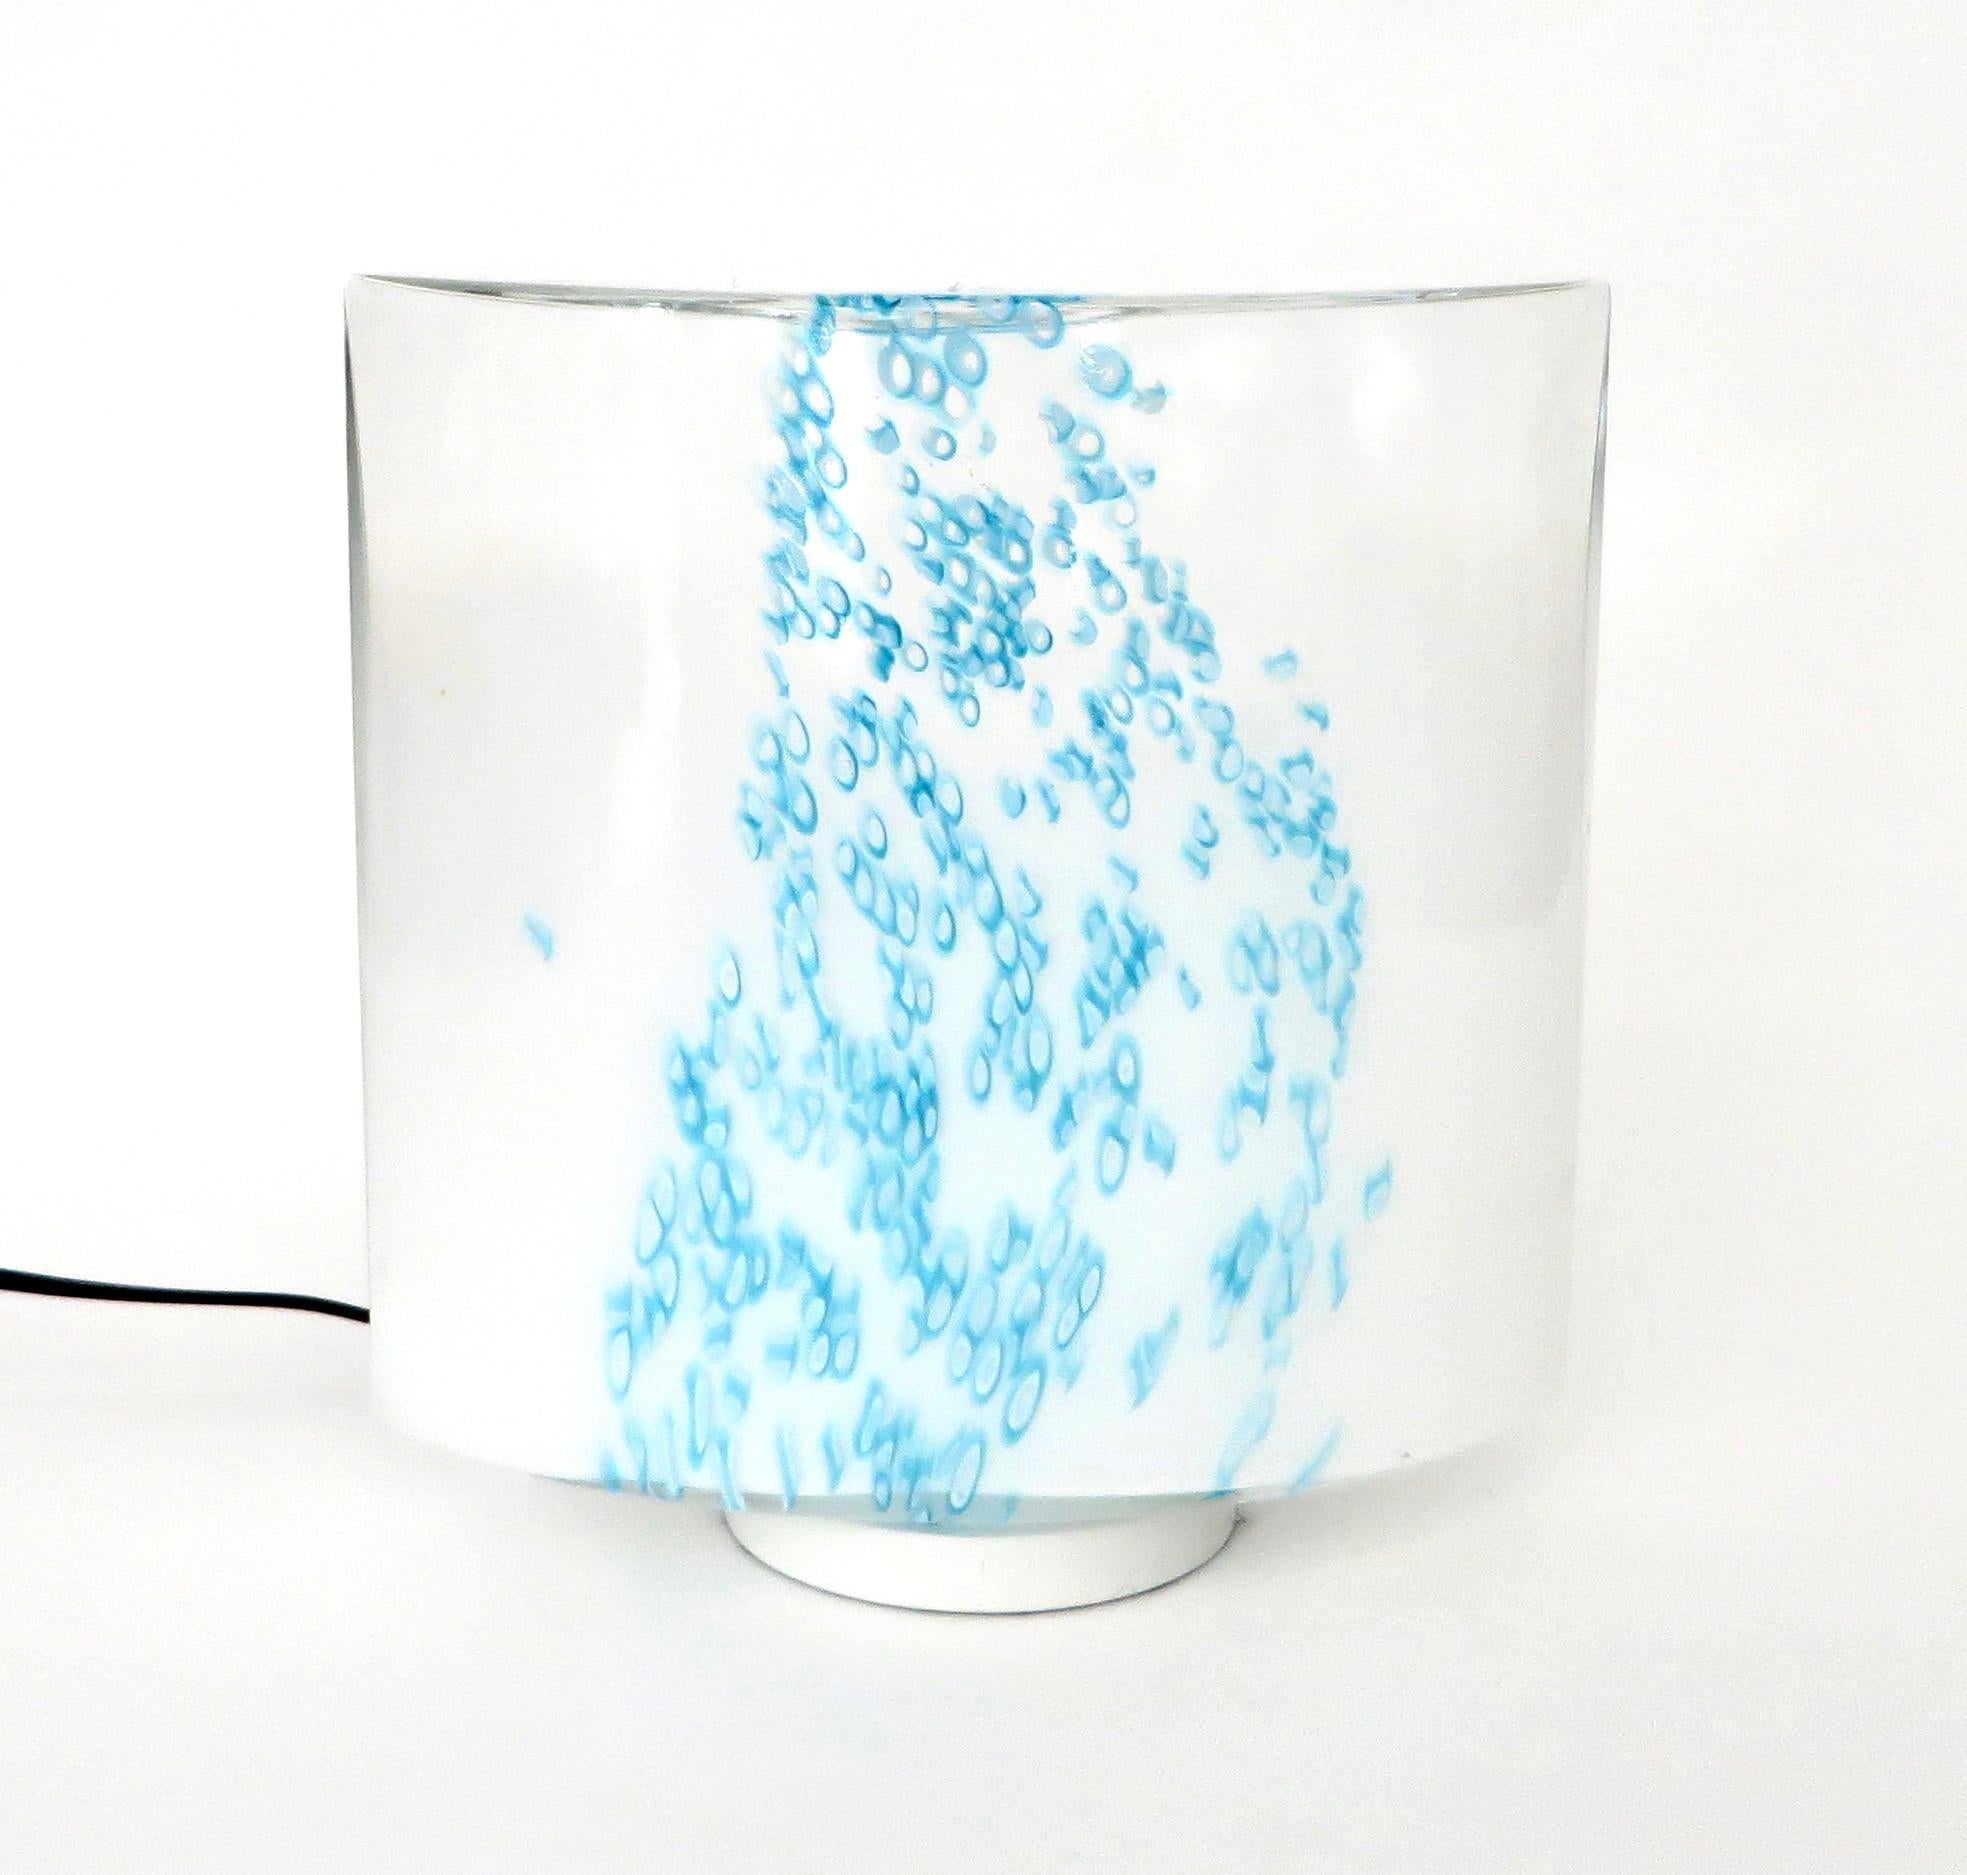 Murano Leucos Tischleuchte aus opakem Glas mit türkisblauen Farbtupfern, die an das Meer oder Regen erinnern.
Beim Anzünden strahlt sie ein schönes, sanftes blaues Licht aus. 
Eine Glühbirne im Sockel.